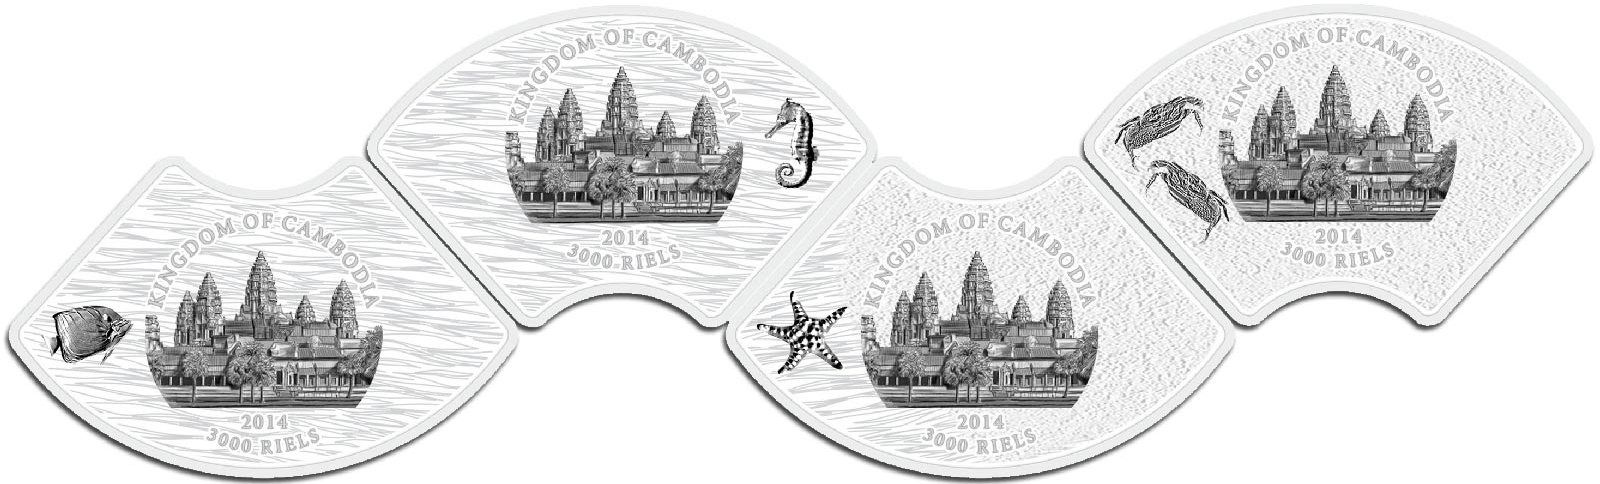 Реверс монет-пазлов Камбоджи